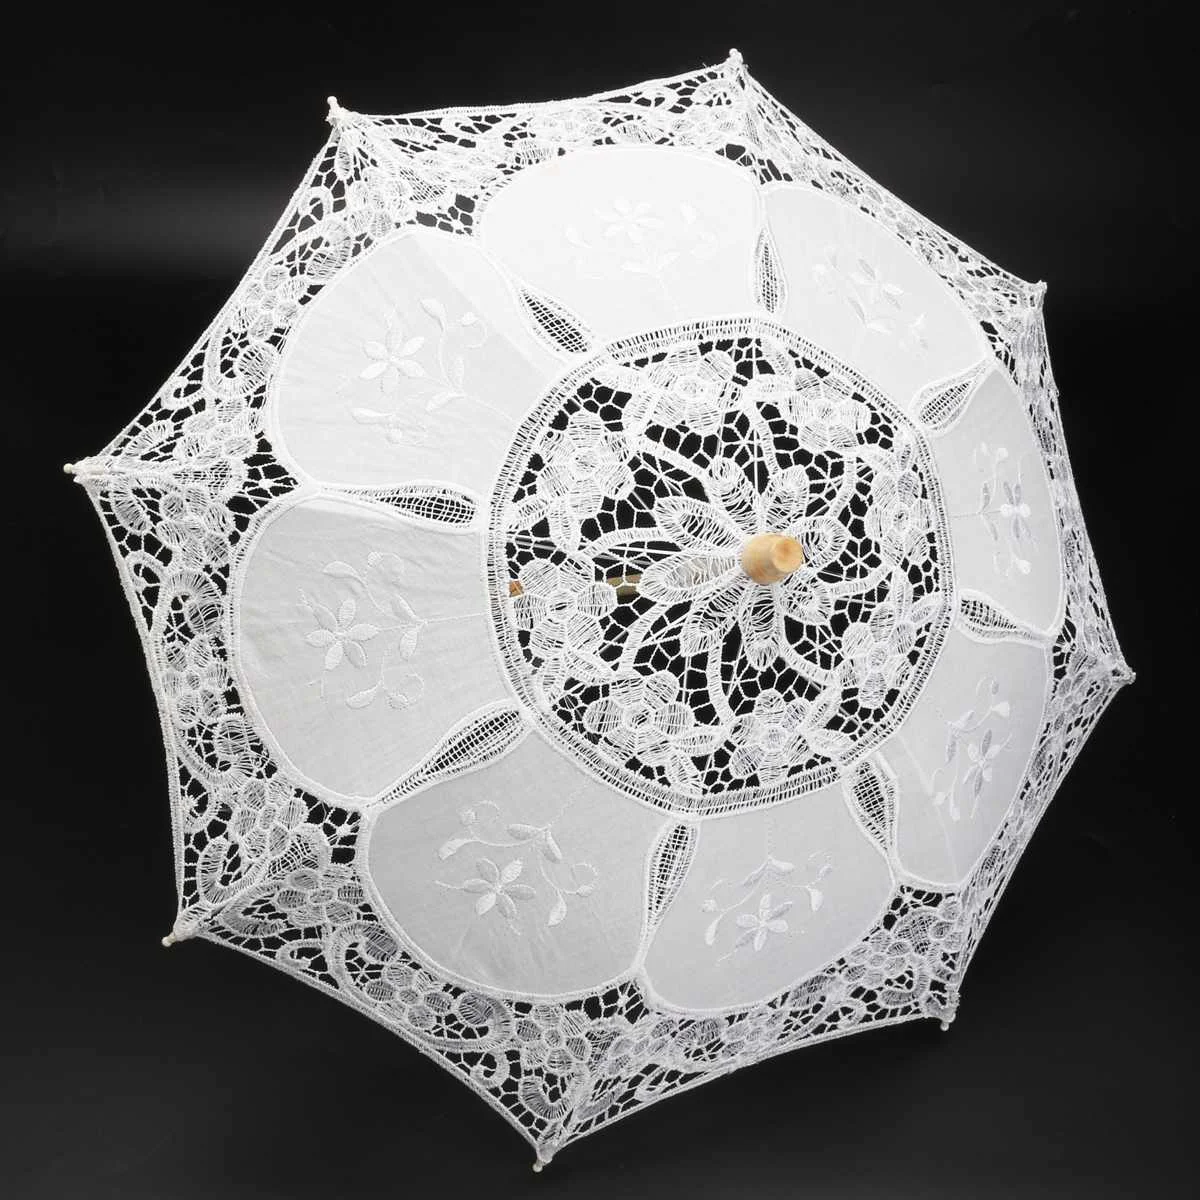 Модный зонт от солнца хлопковый Зонт с вышивкой белое, цвета слоновой кости кружево зонтик для свадебной вечеринки декор съемки реквизит